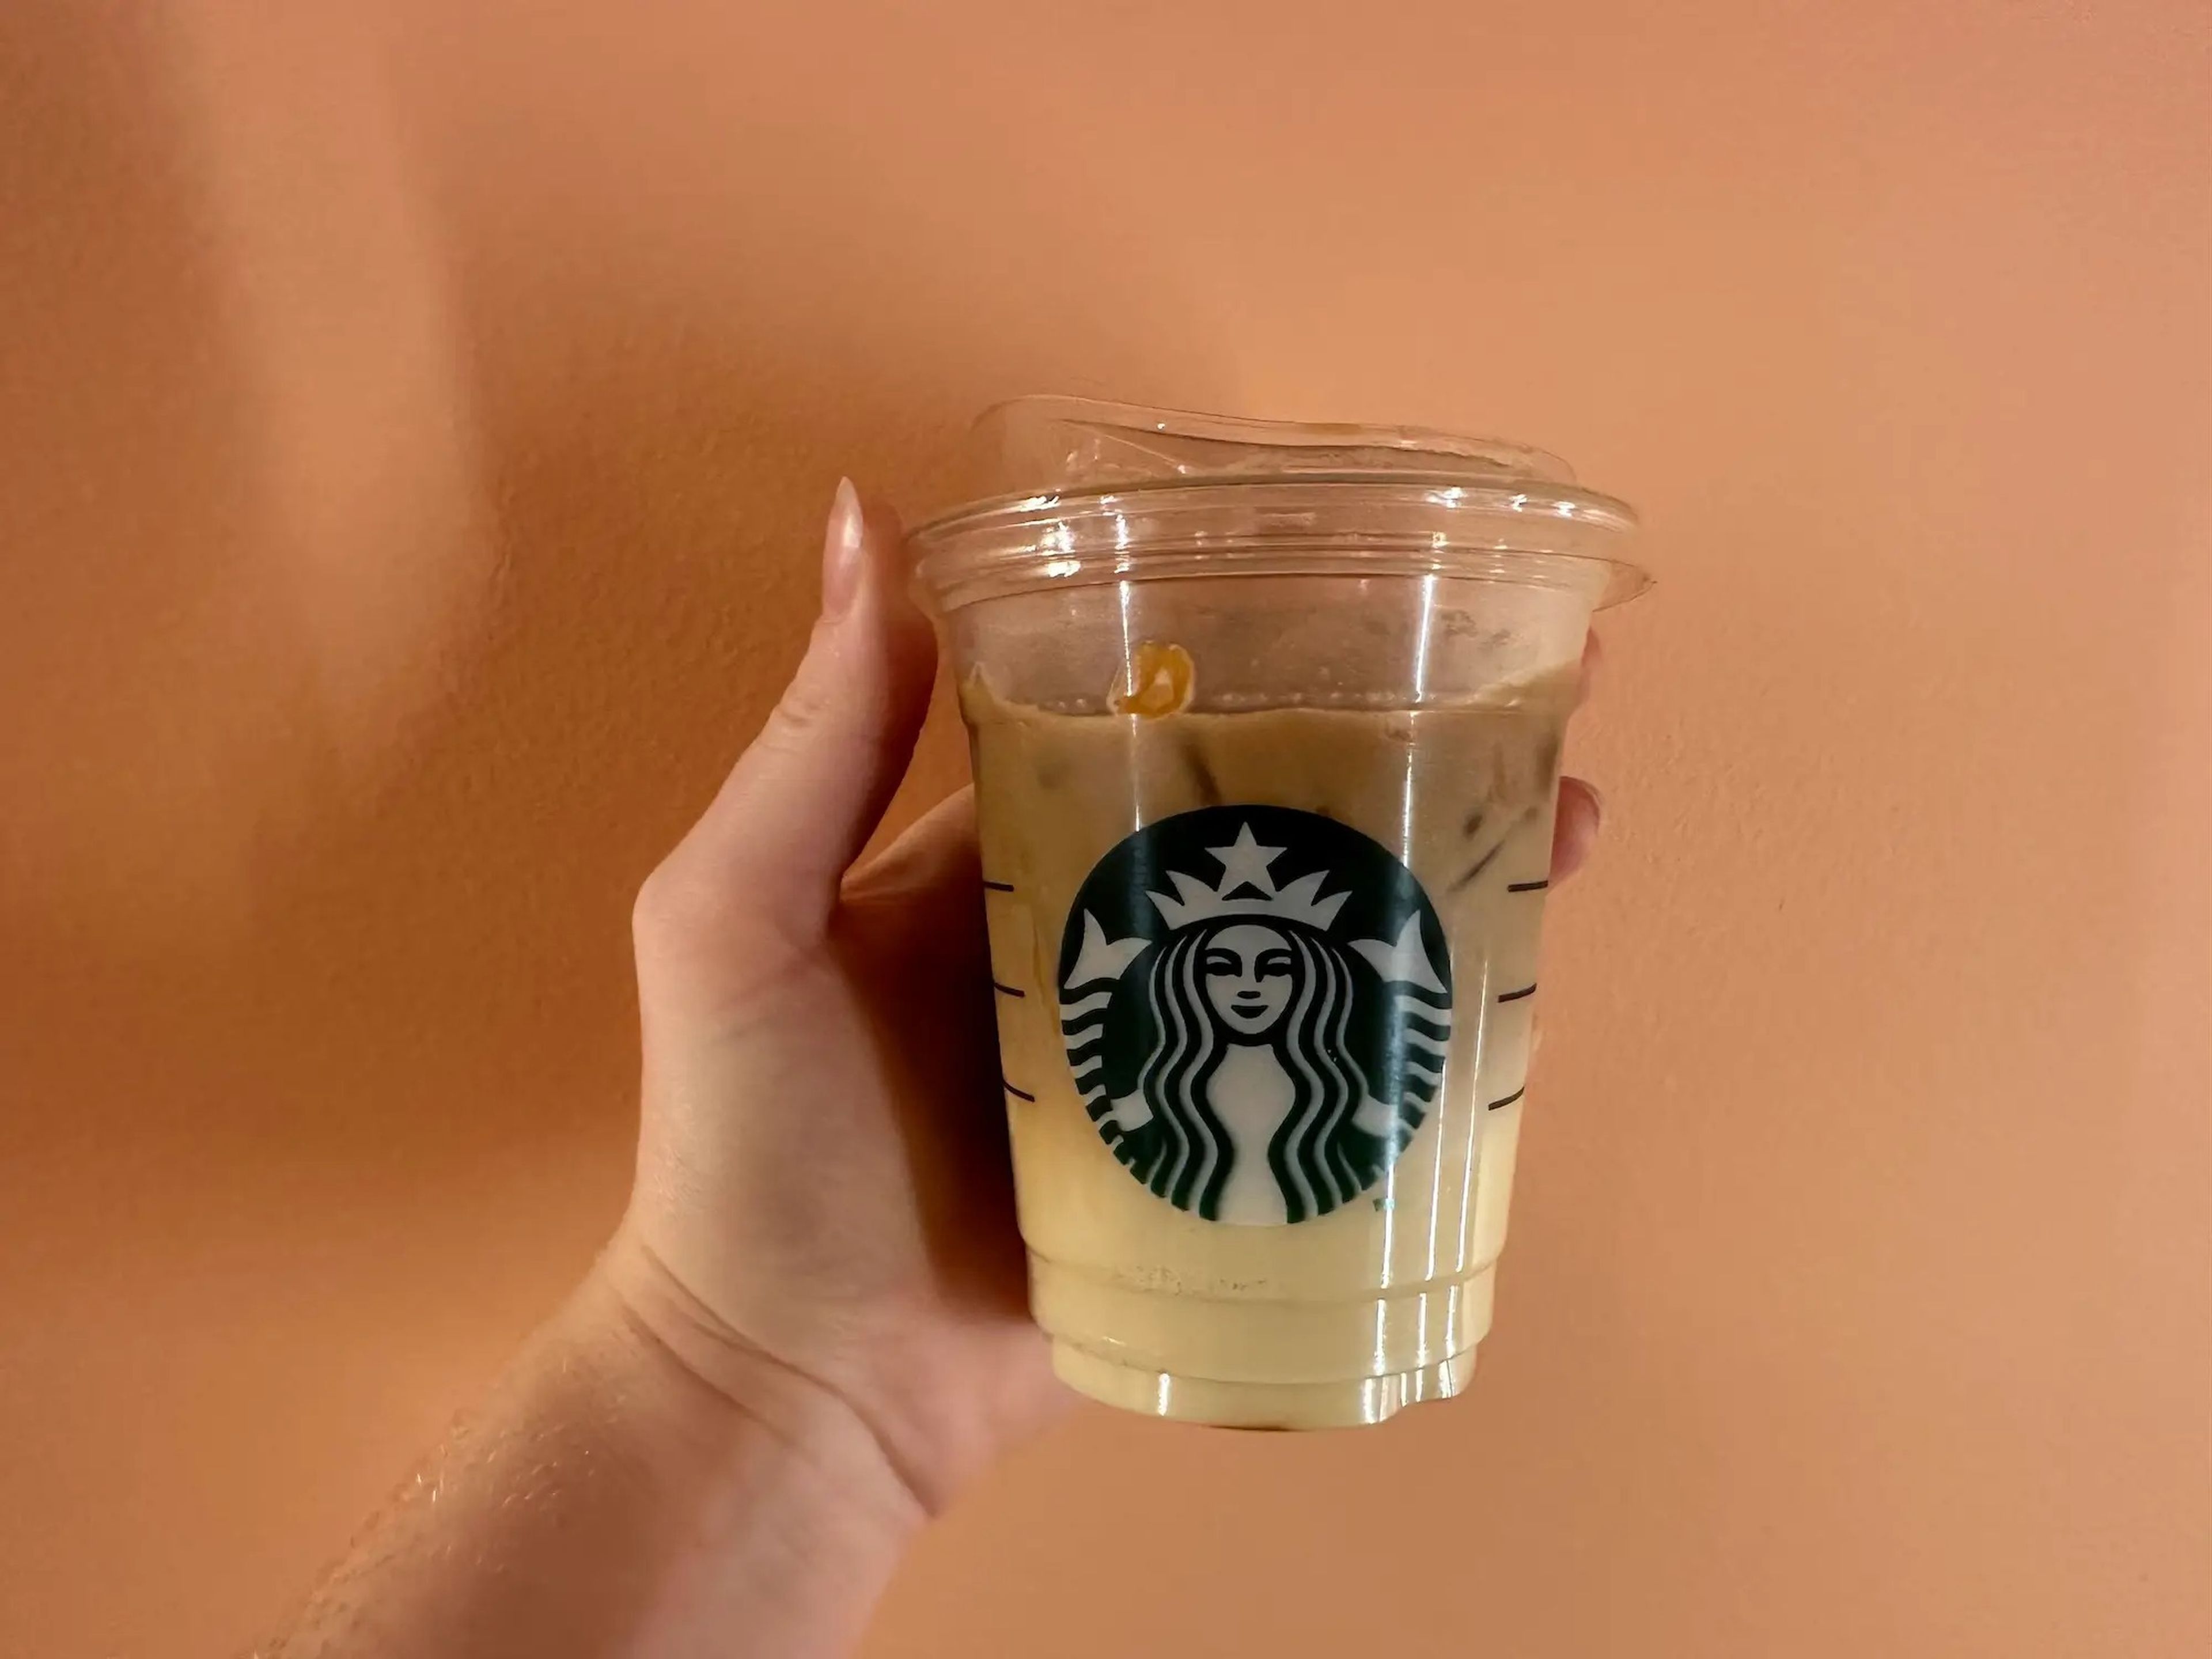 Bebida más cara de Starbucks del mundo en 2022.